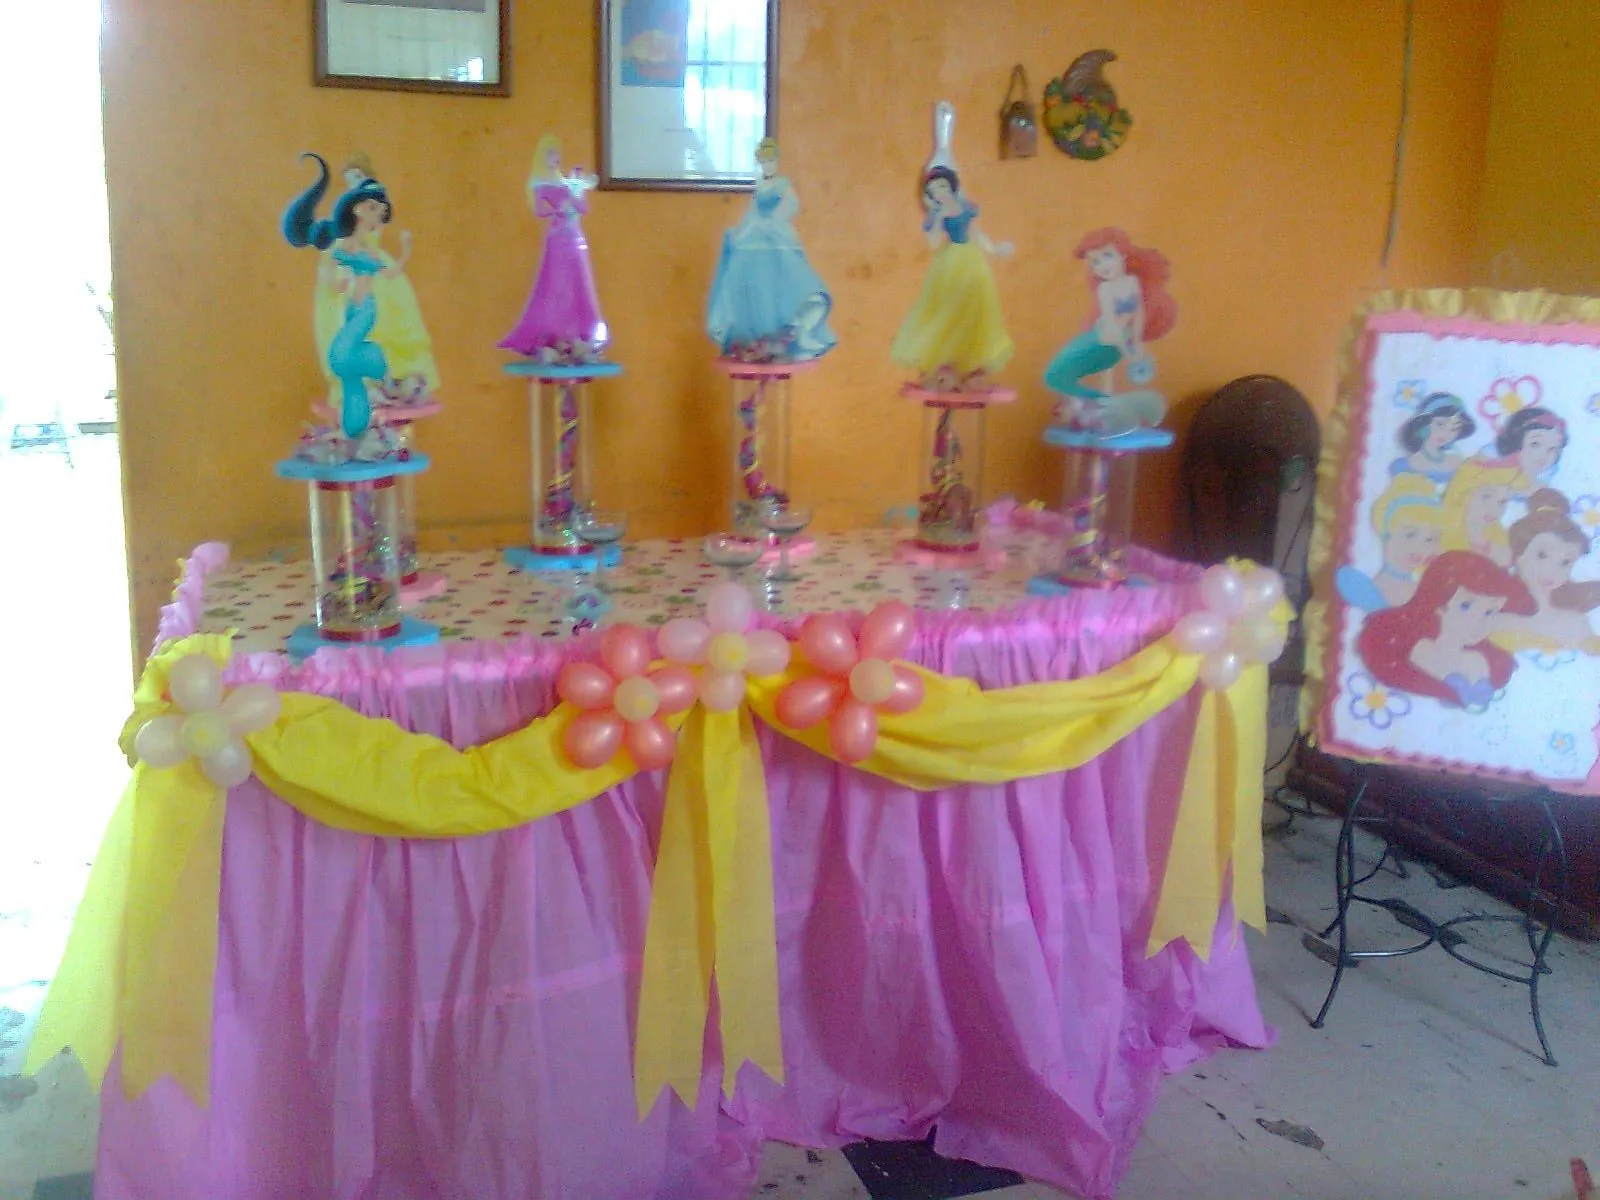 Party & Piñatas "Variedades Dana's": abril 2012